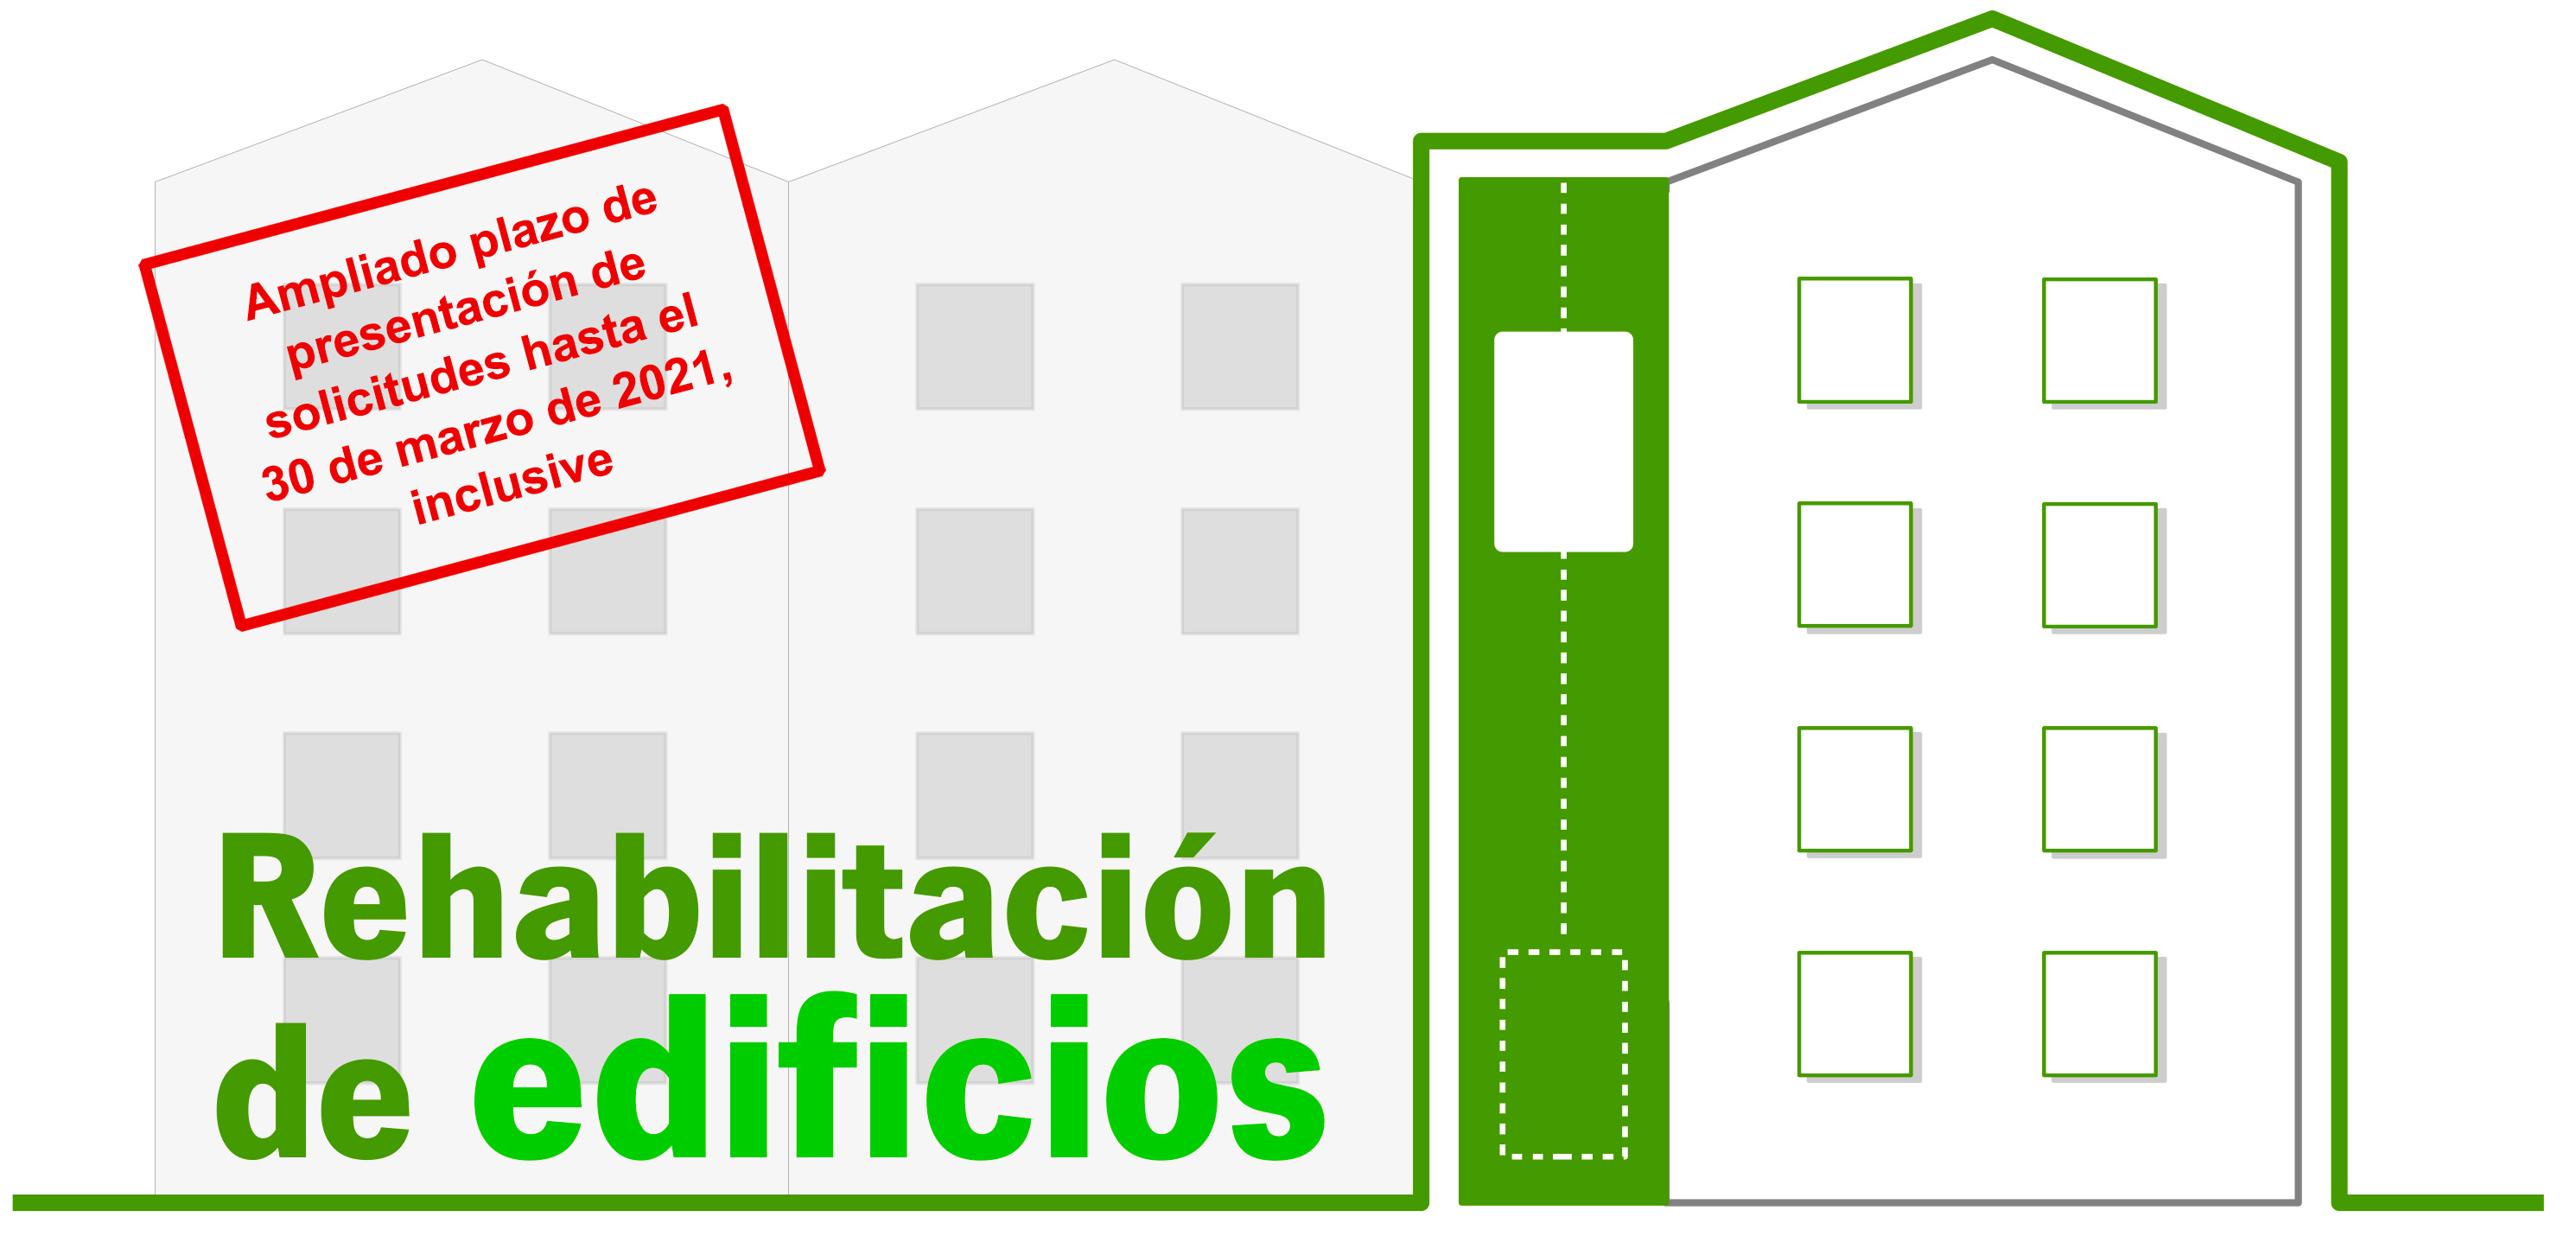 Ampliado el plazo de las subvenciones para la rehabilitación de edificios en la Comunidad Autónoma de Andalucía